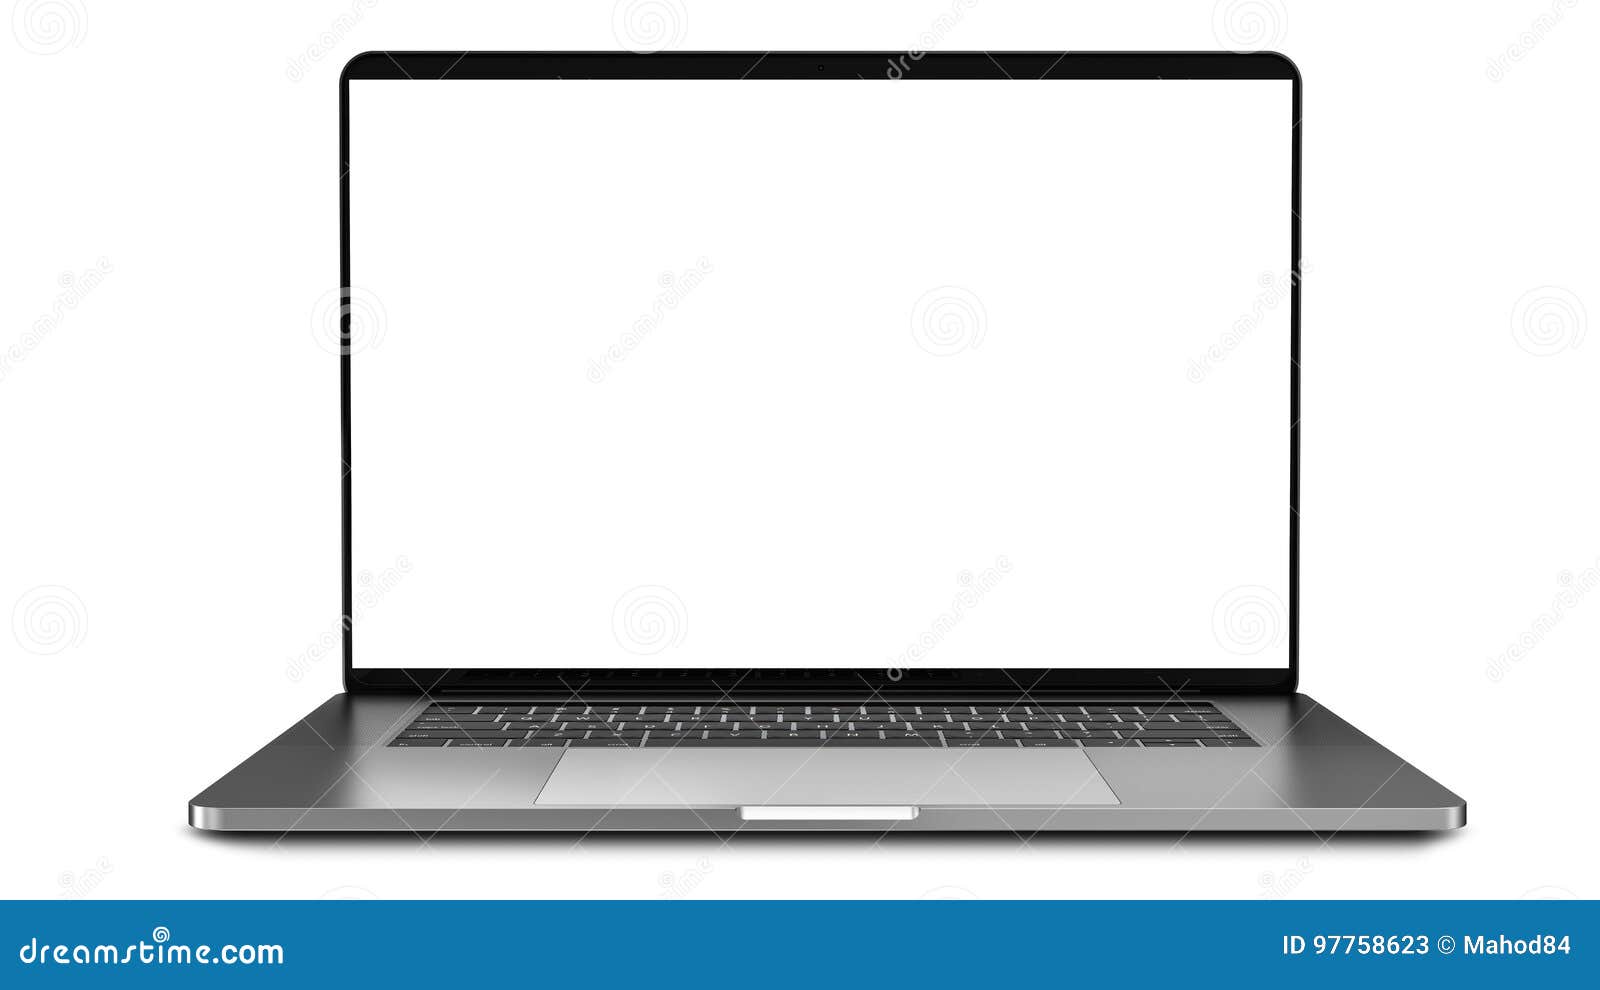 Màn hình trống, Laptop, Nền trắng: Sự đơn giản và tinh tế của màn hình trống và nền trắng giúp tạo ra một không gian thật sự trang nhã cho chiếc laptop của bạn. Hãy tận hưởng những màu sắc tuyệt đẹp của thiết bị của bạn khi được chụp ảnh trong không gian nền trắng, đem lại sự tinh tế và chuyên nghiệp.